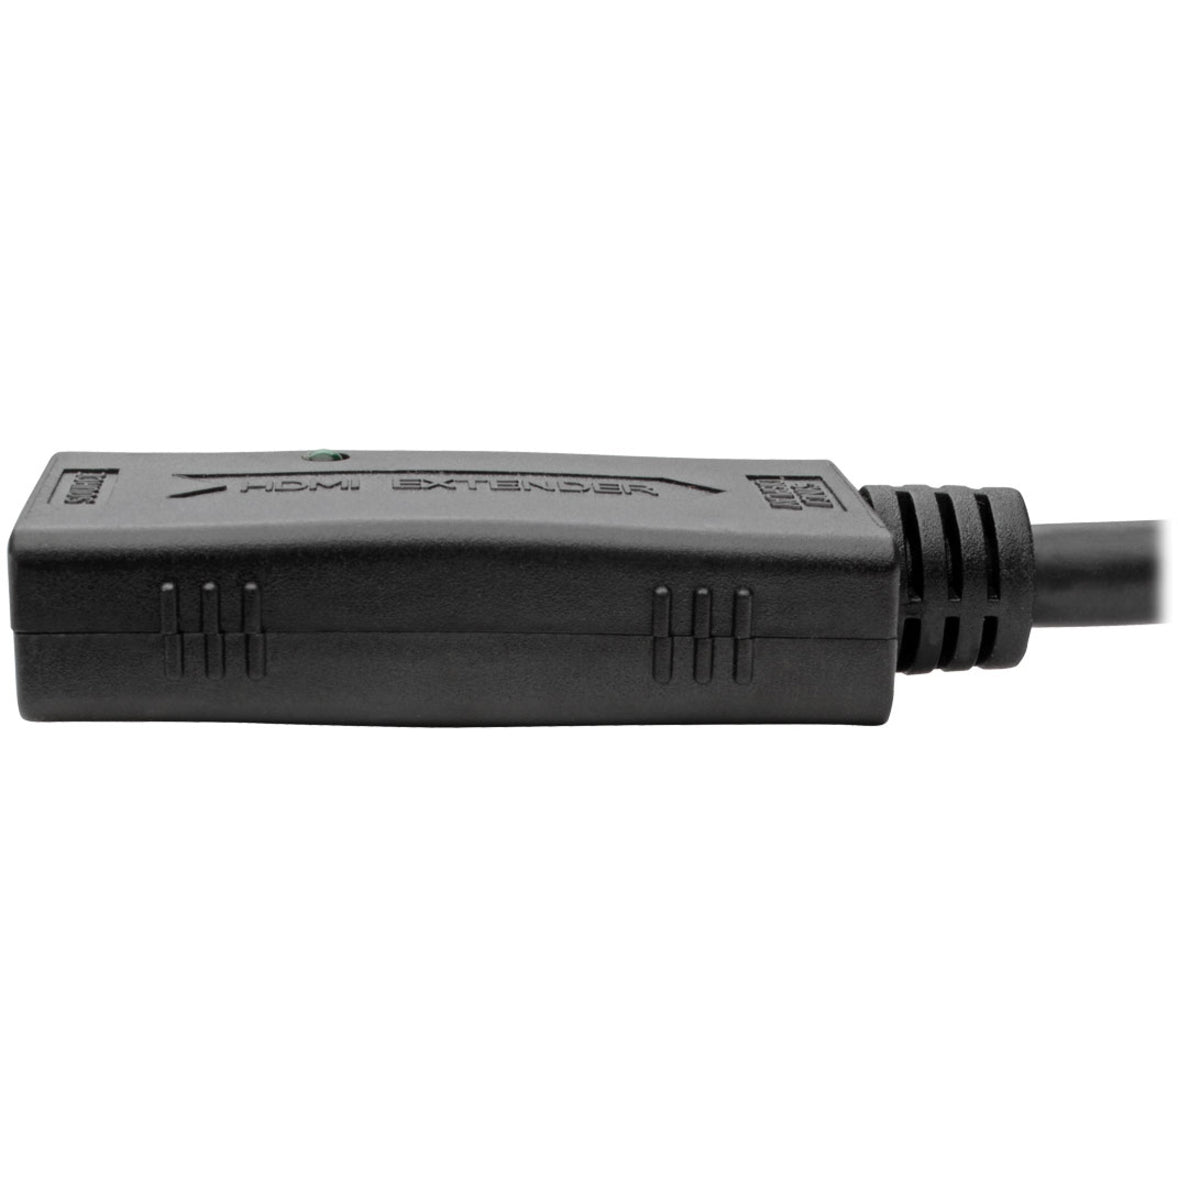 تريب لايت B123-001 كابل تمديد HDMI نشطة ، 1 قدم ، موصل نحاسي ، متوافق مع TAA ، المنشأ تايوان